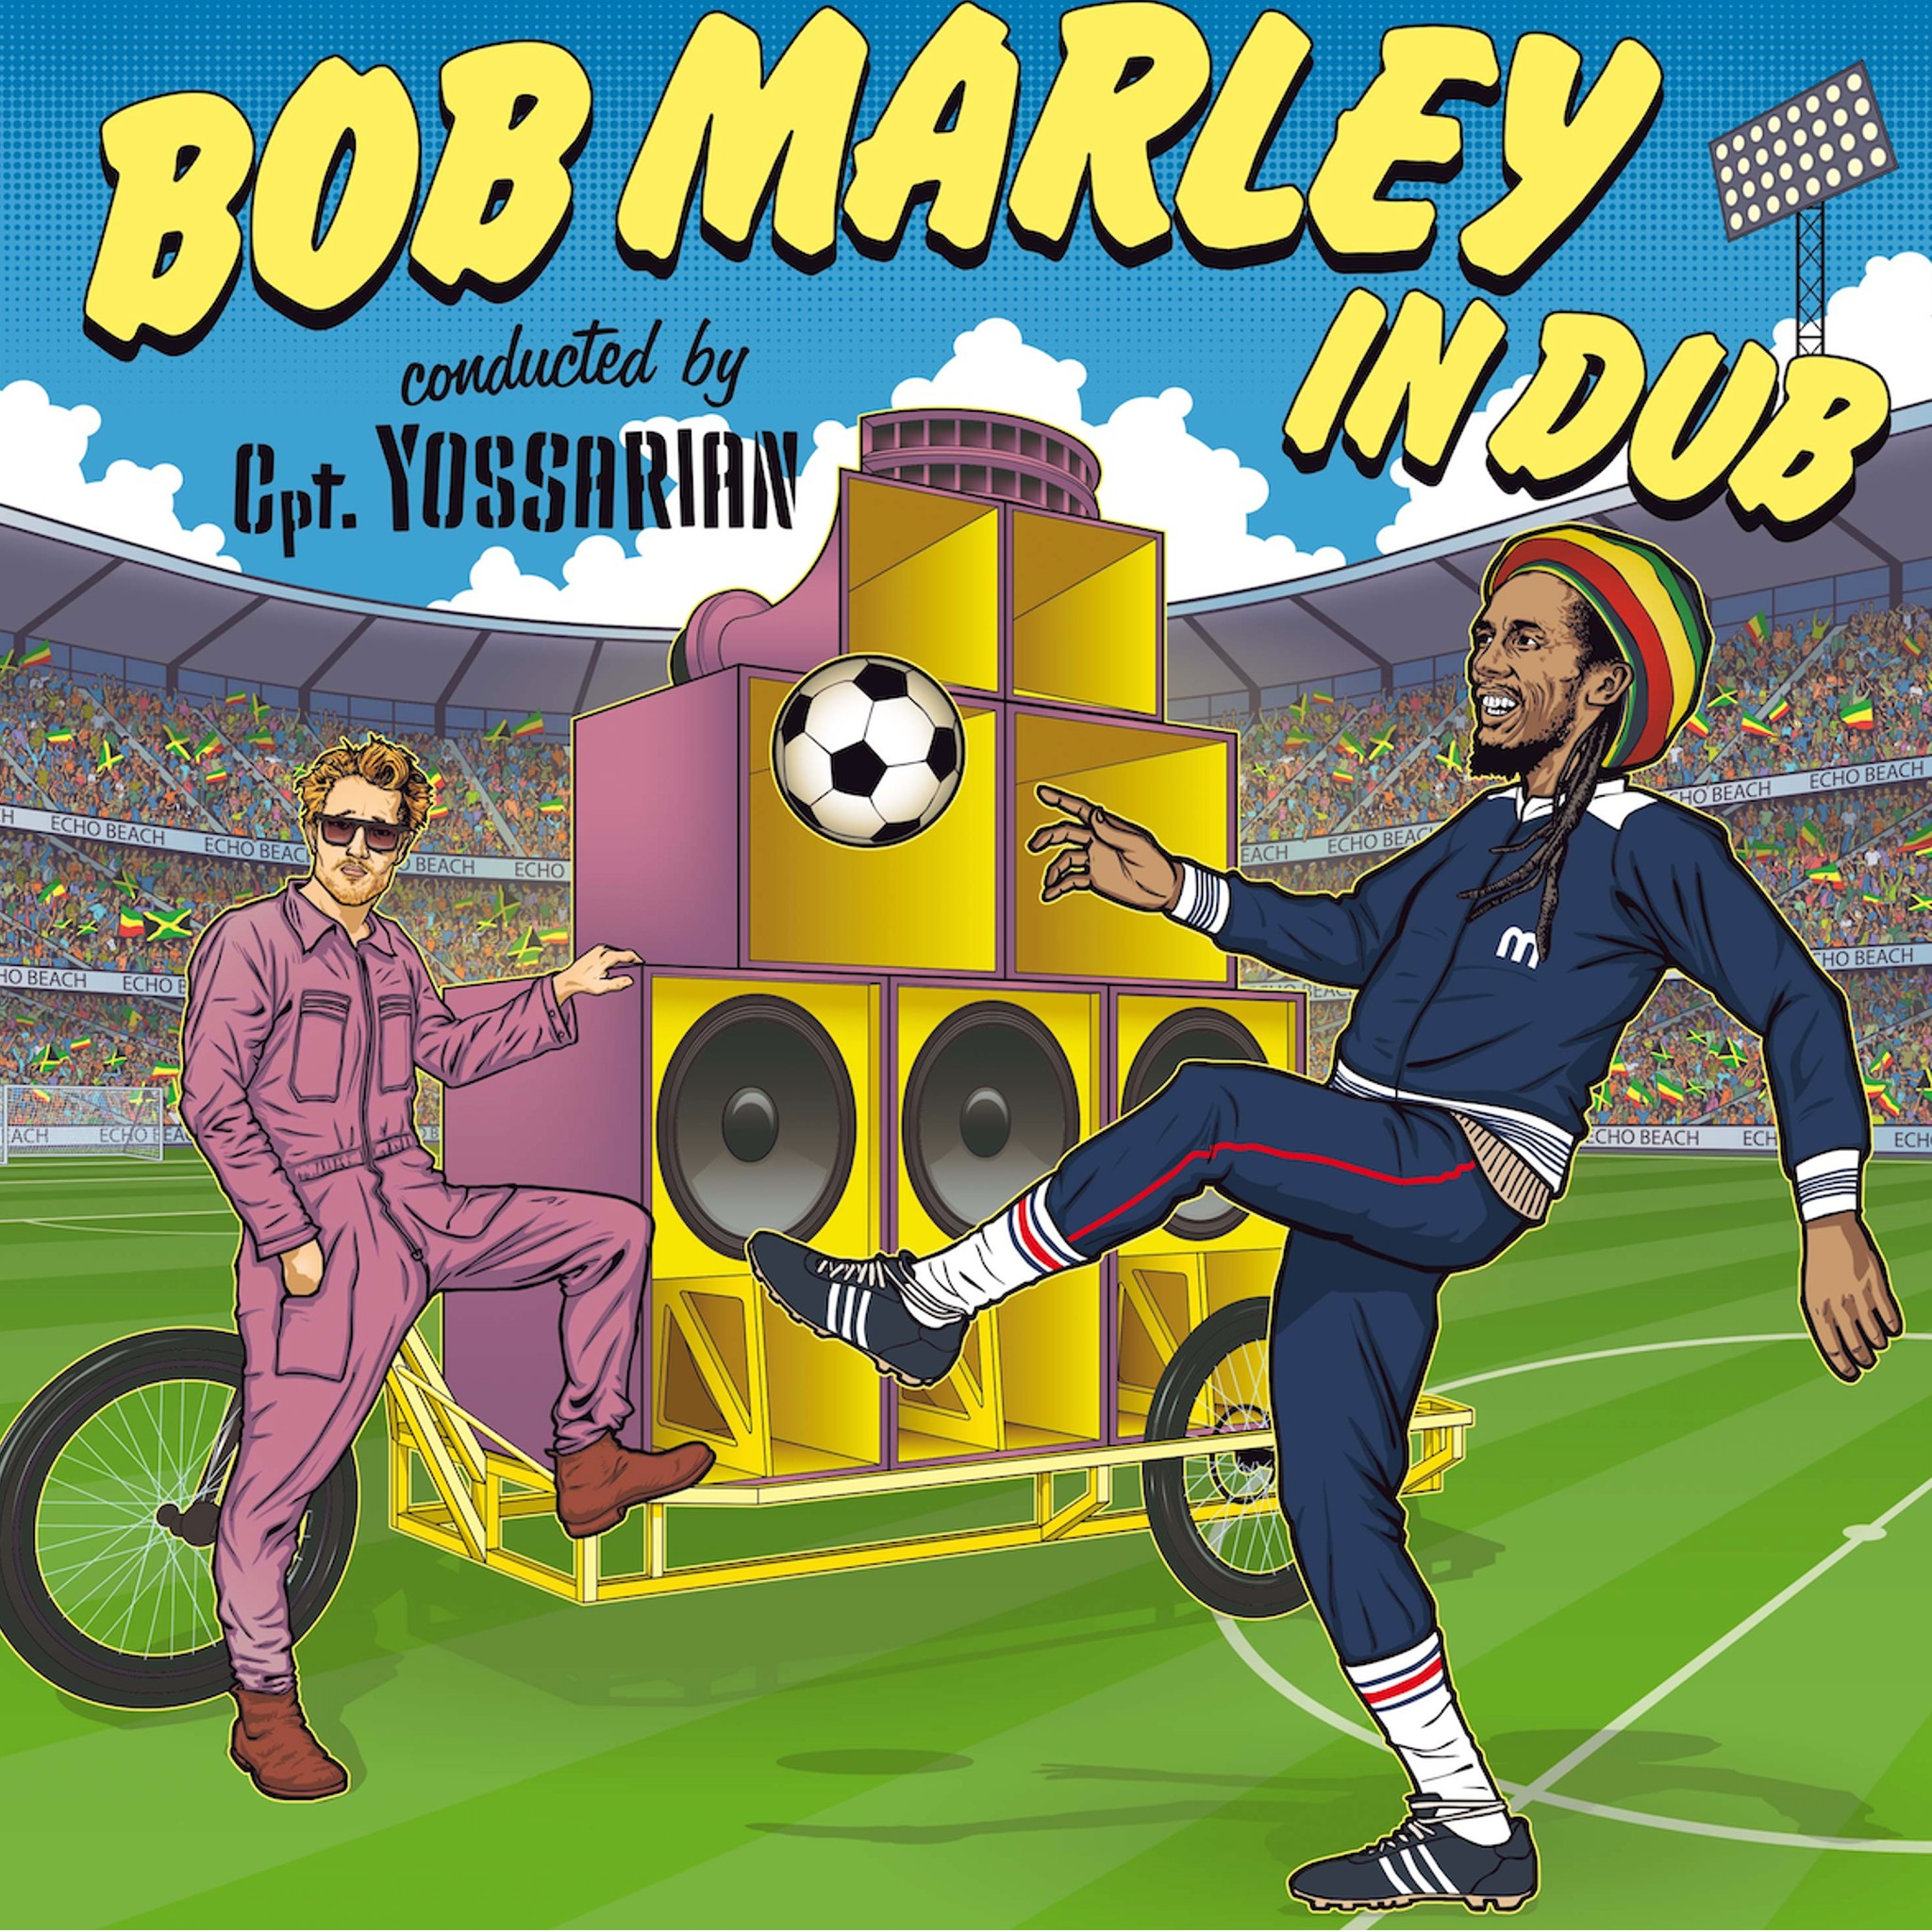 Bob Marley in Dub